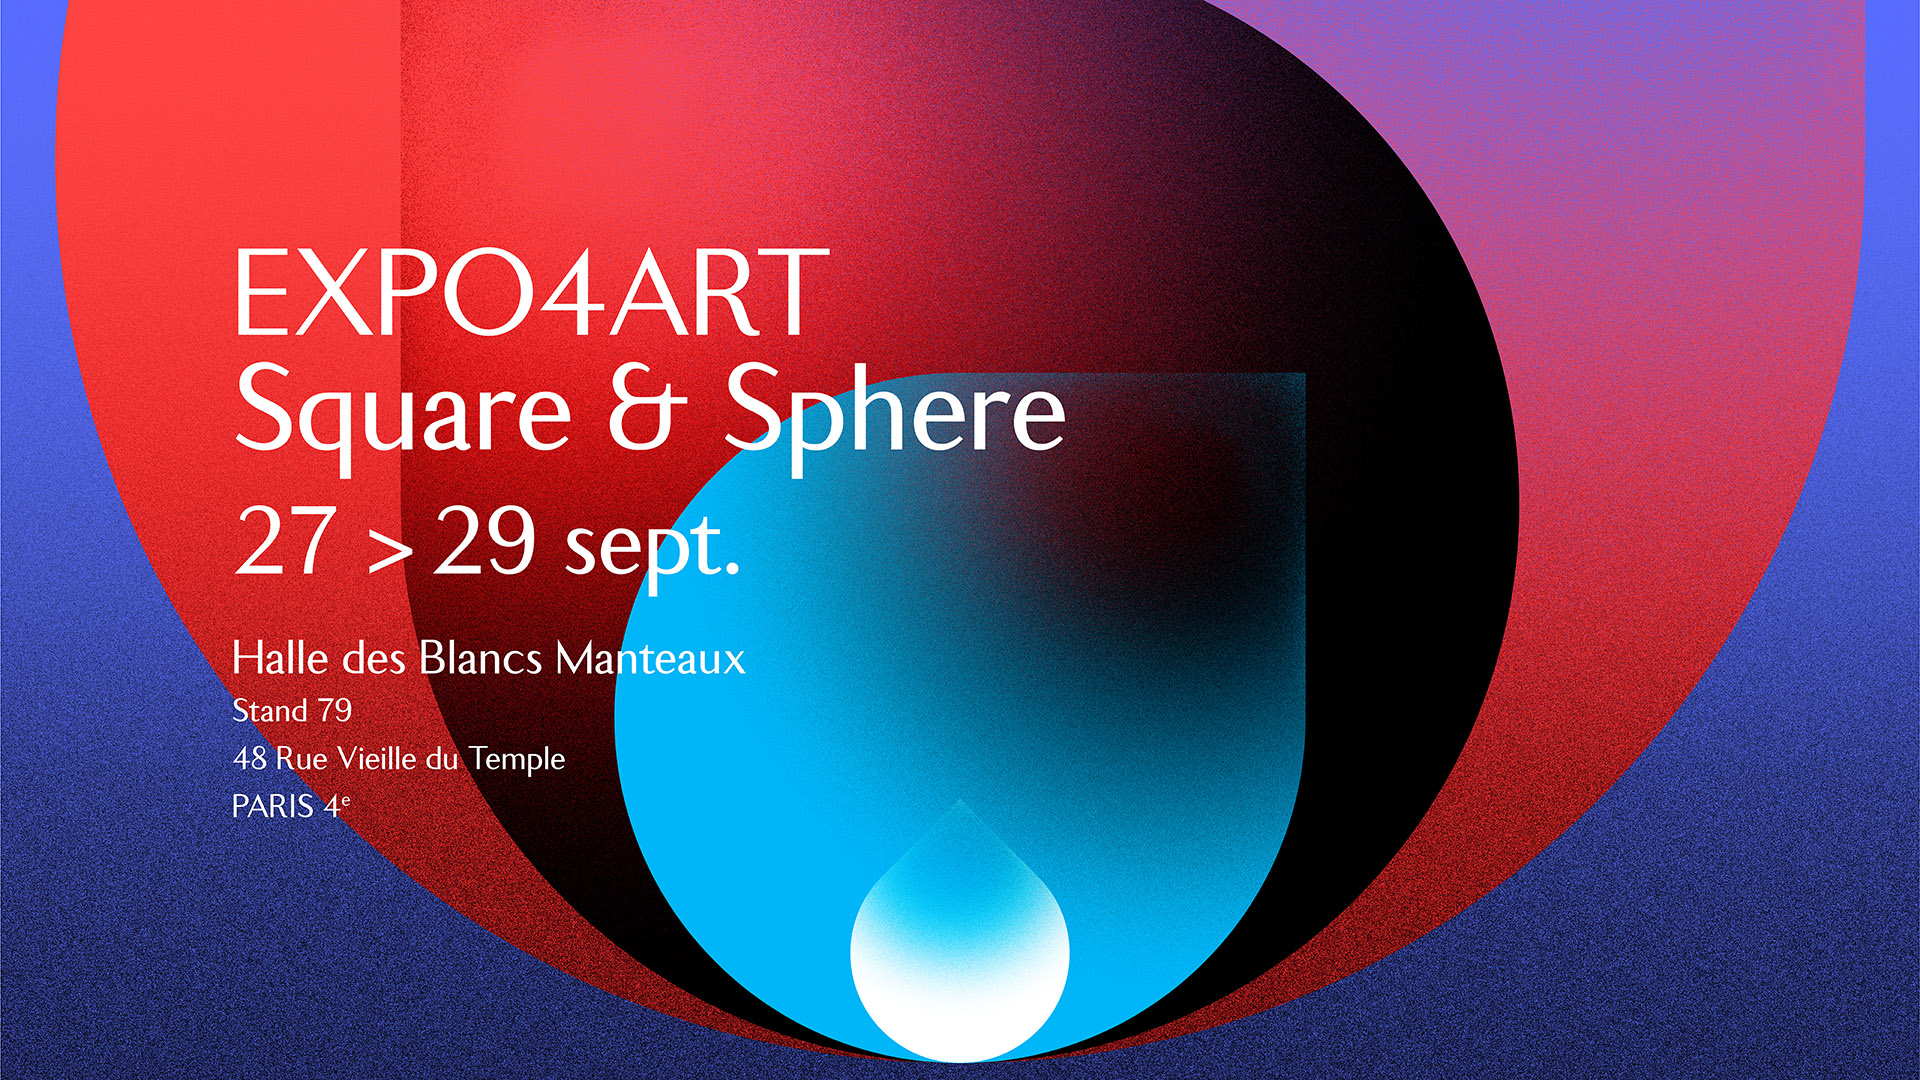 Expo4Art Halle des Blancs Manteaux - Square & Sphere collection - christophe andrusin - subligraphie sur plaque d'aluminium